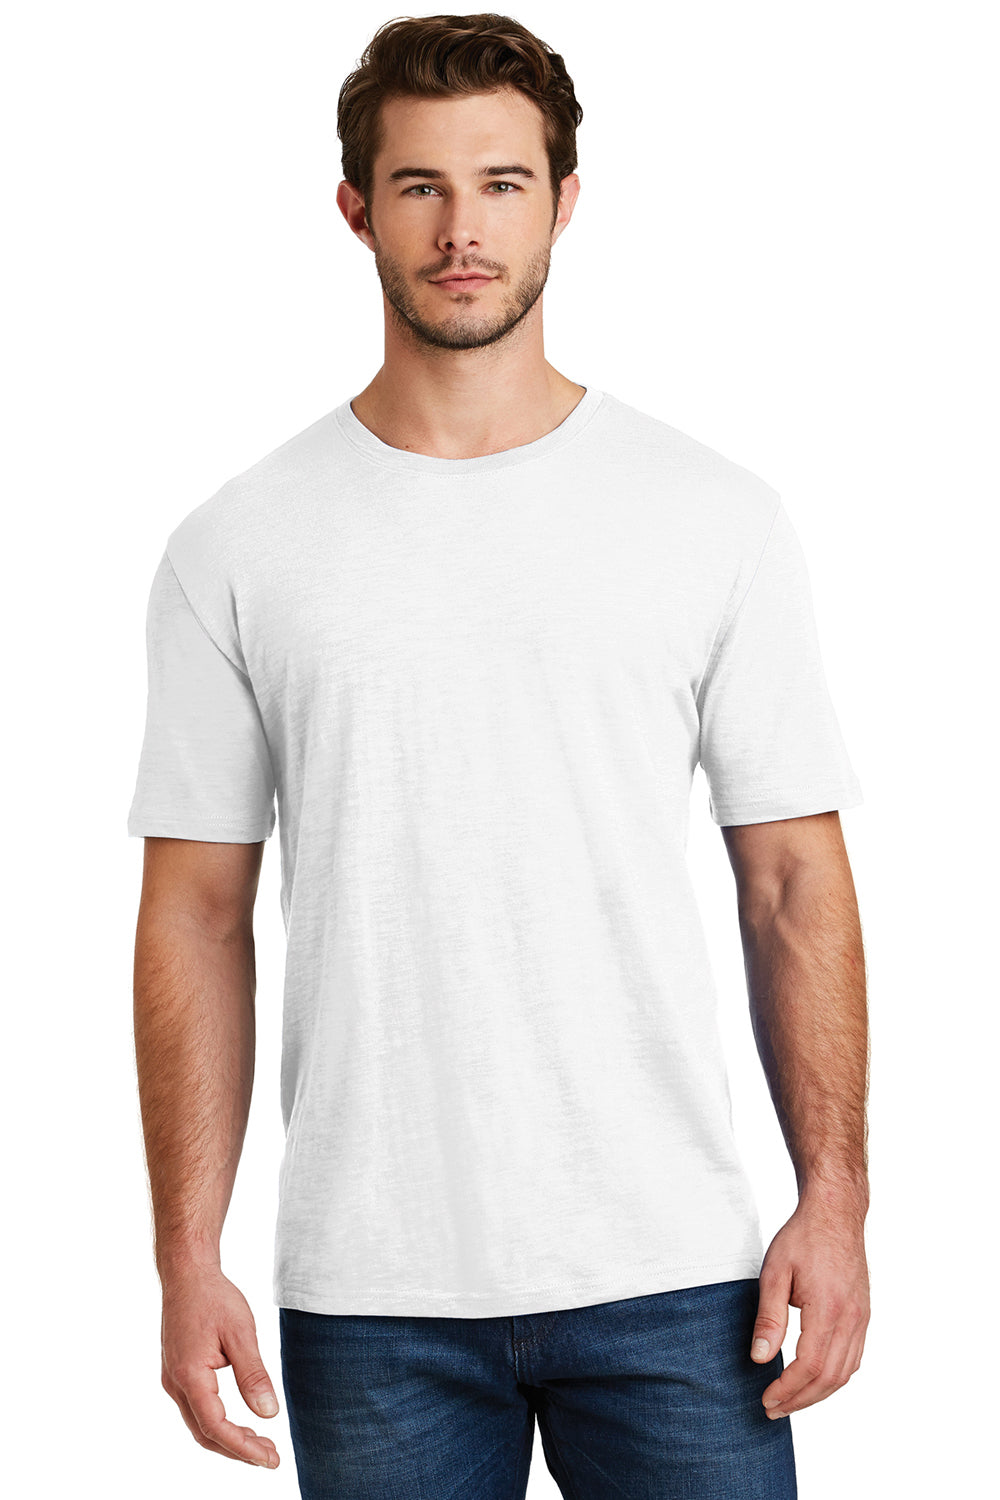 District DM3000 Mens Super Slub Short Sleeve Crewneck T-Shirt White Front